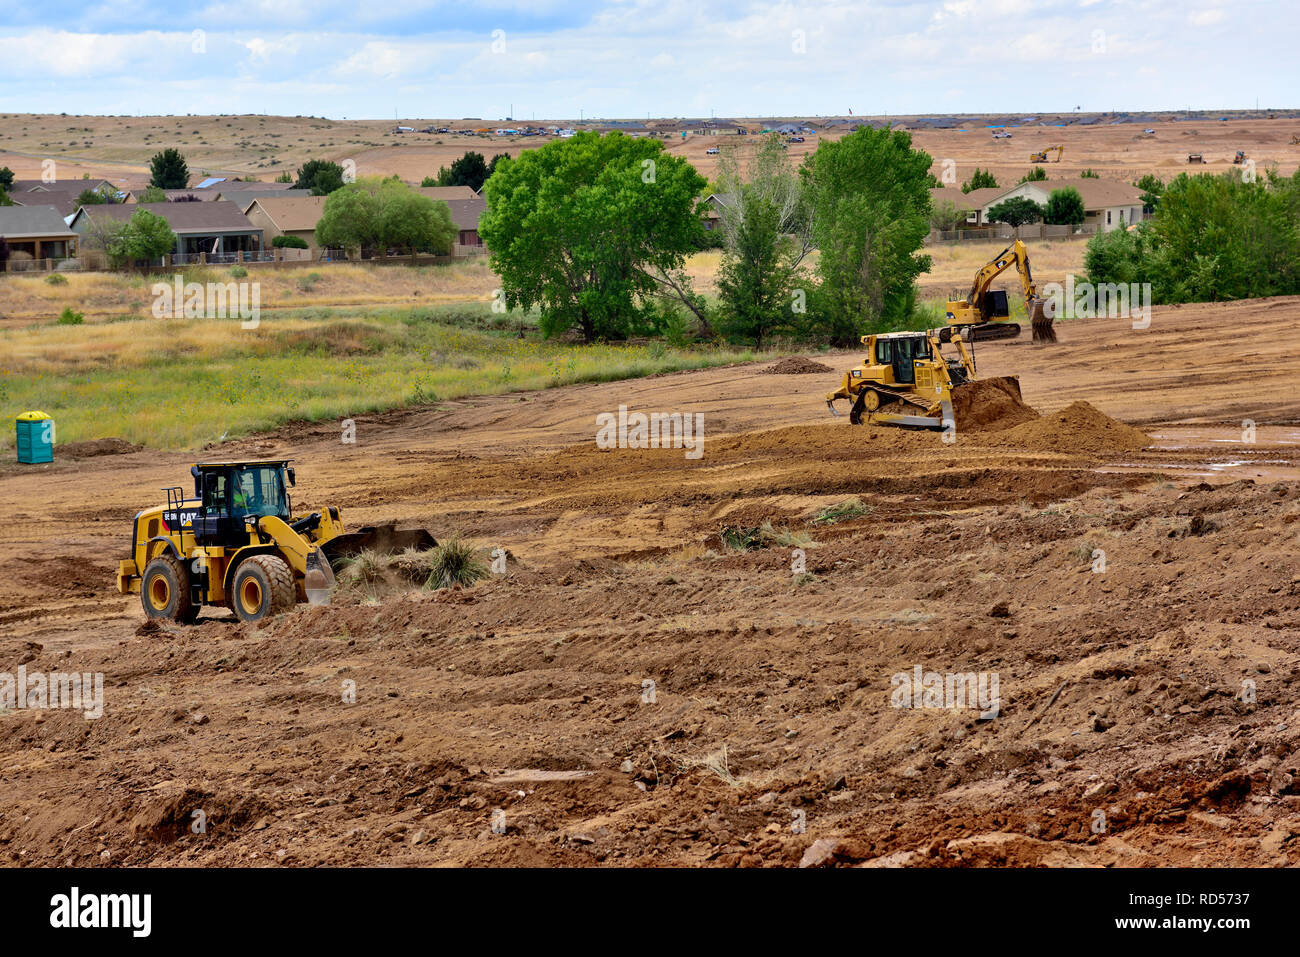 Compensation lourd de terrassement et de nivellement des terres pour les capacités d'accueil, Arizona, USA Banque D'Images